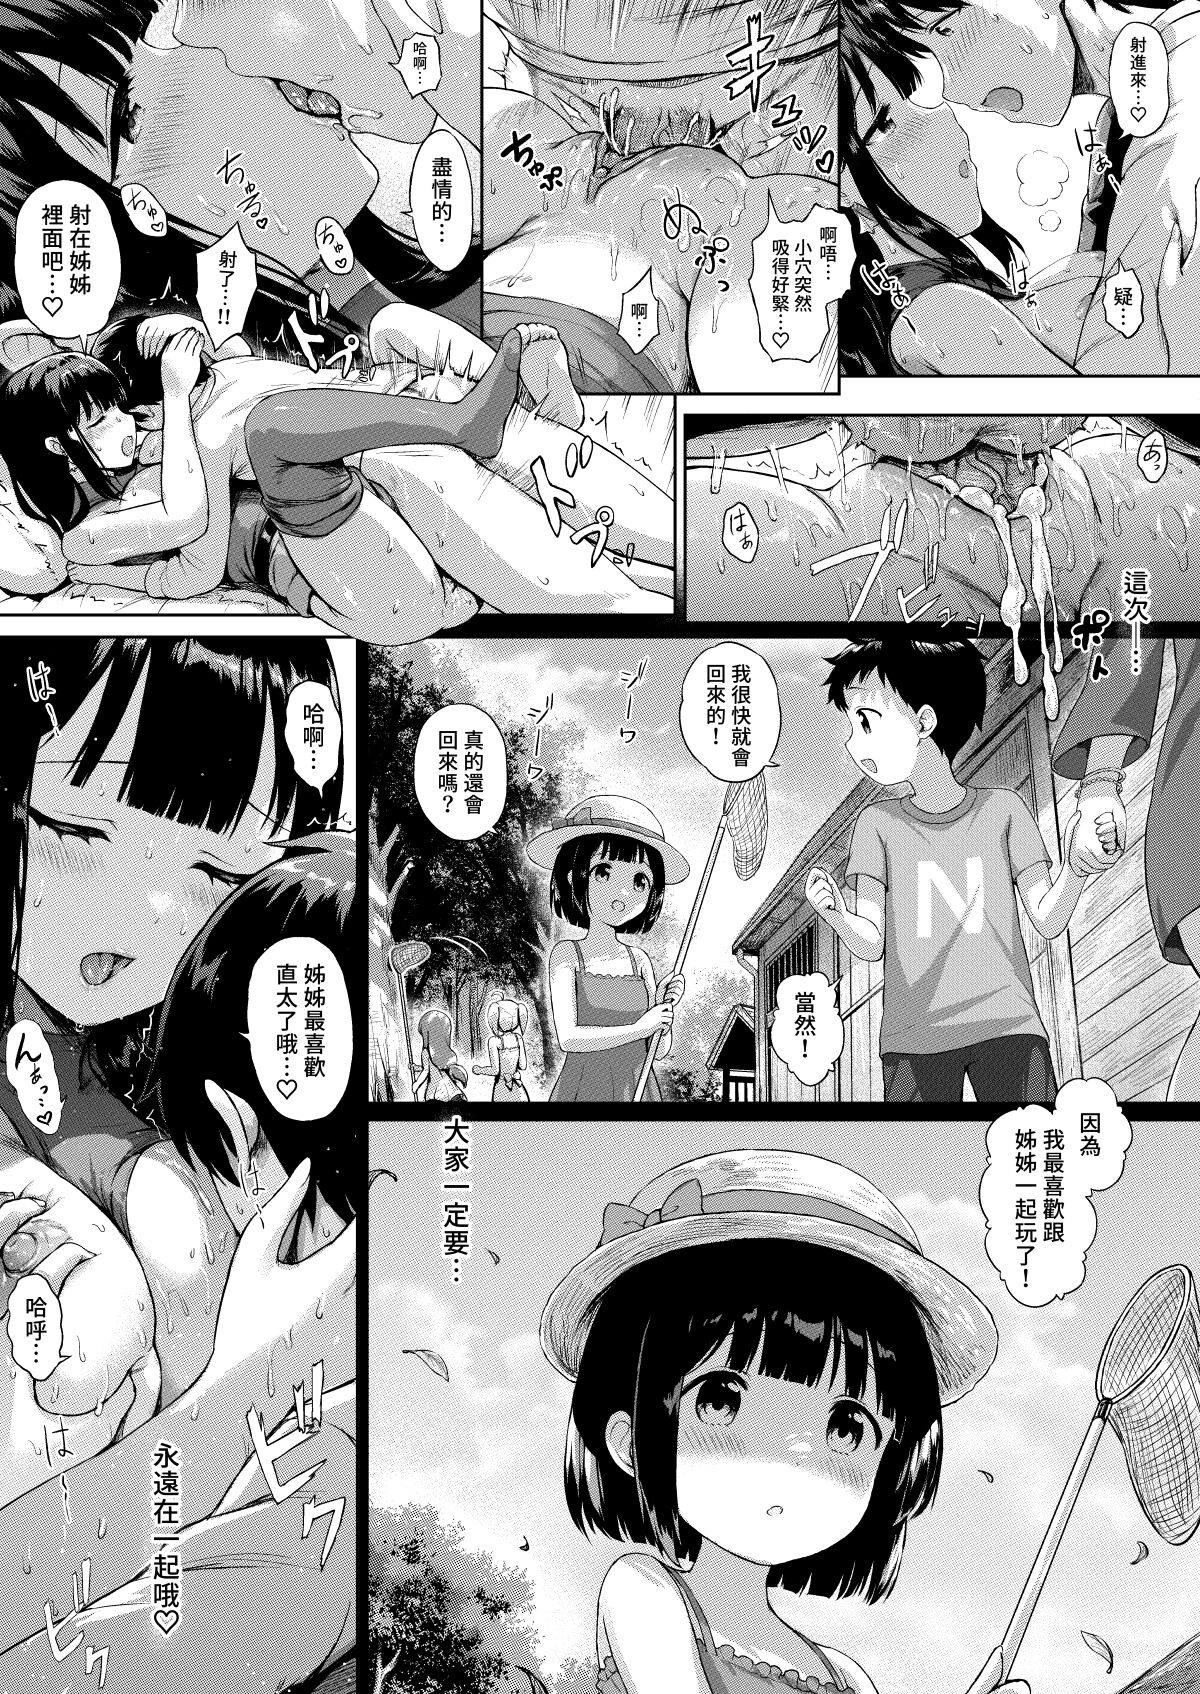 [Sayika] Sanshimai Manga ep1 p1-20 [Chinese] [Decensored] [Sayika] 三姉妹漫画ep1 p1-9 [中国語] [無修正]